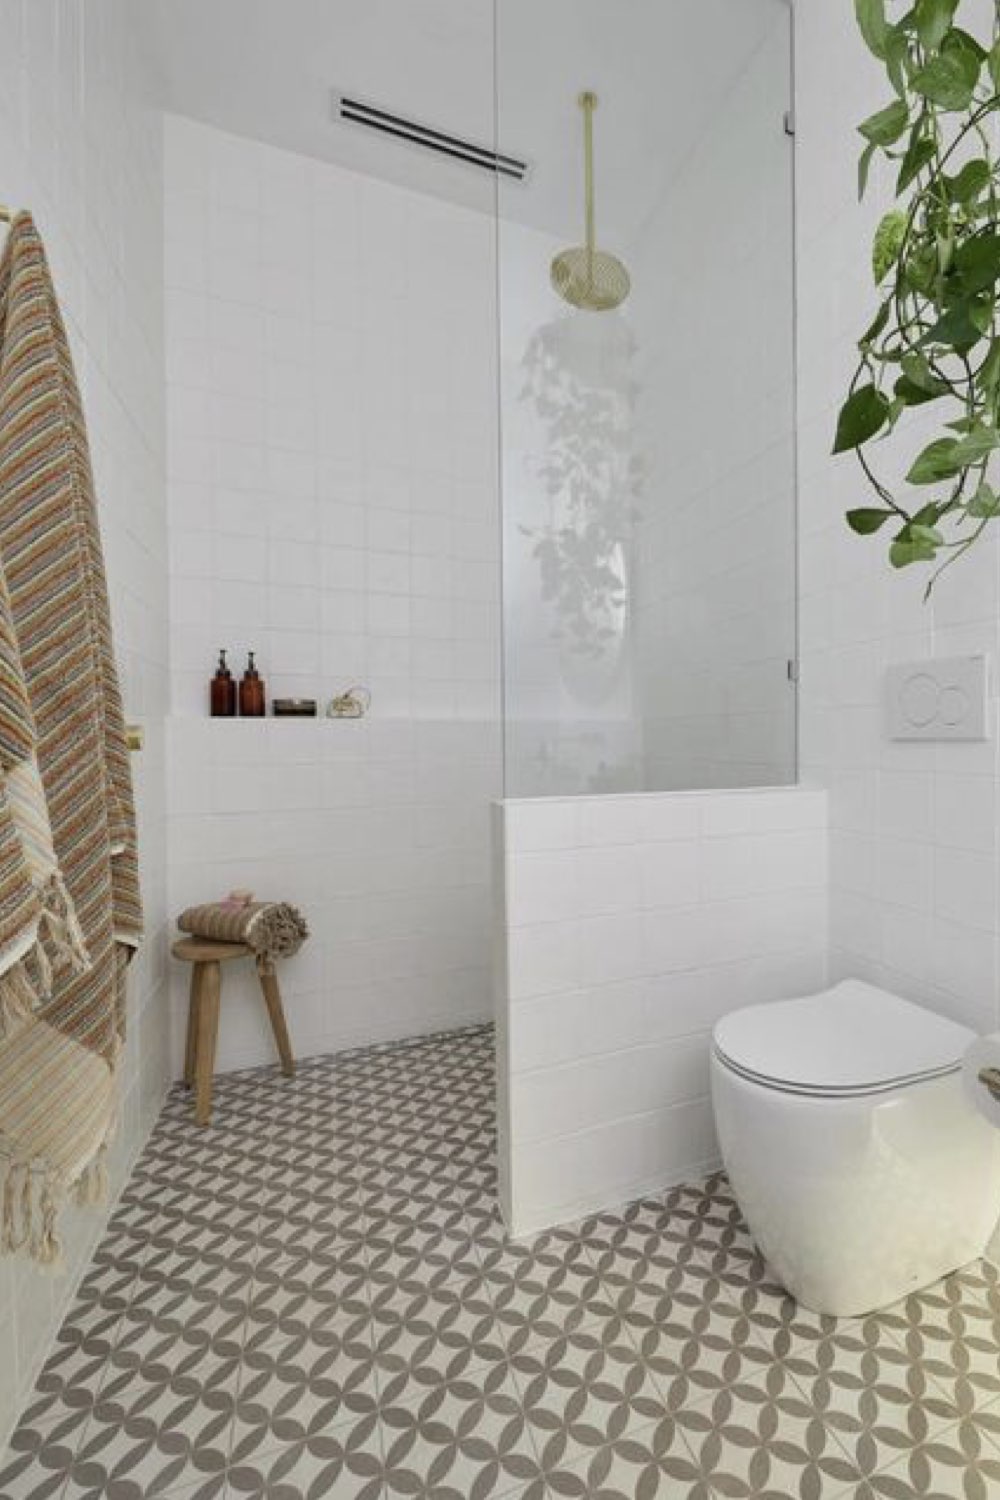 salle de bain douche deco detente italienne sans receveur carrelage motif au sol blanc mur paroi transparente moderne